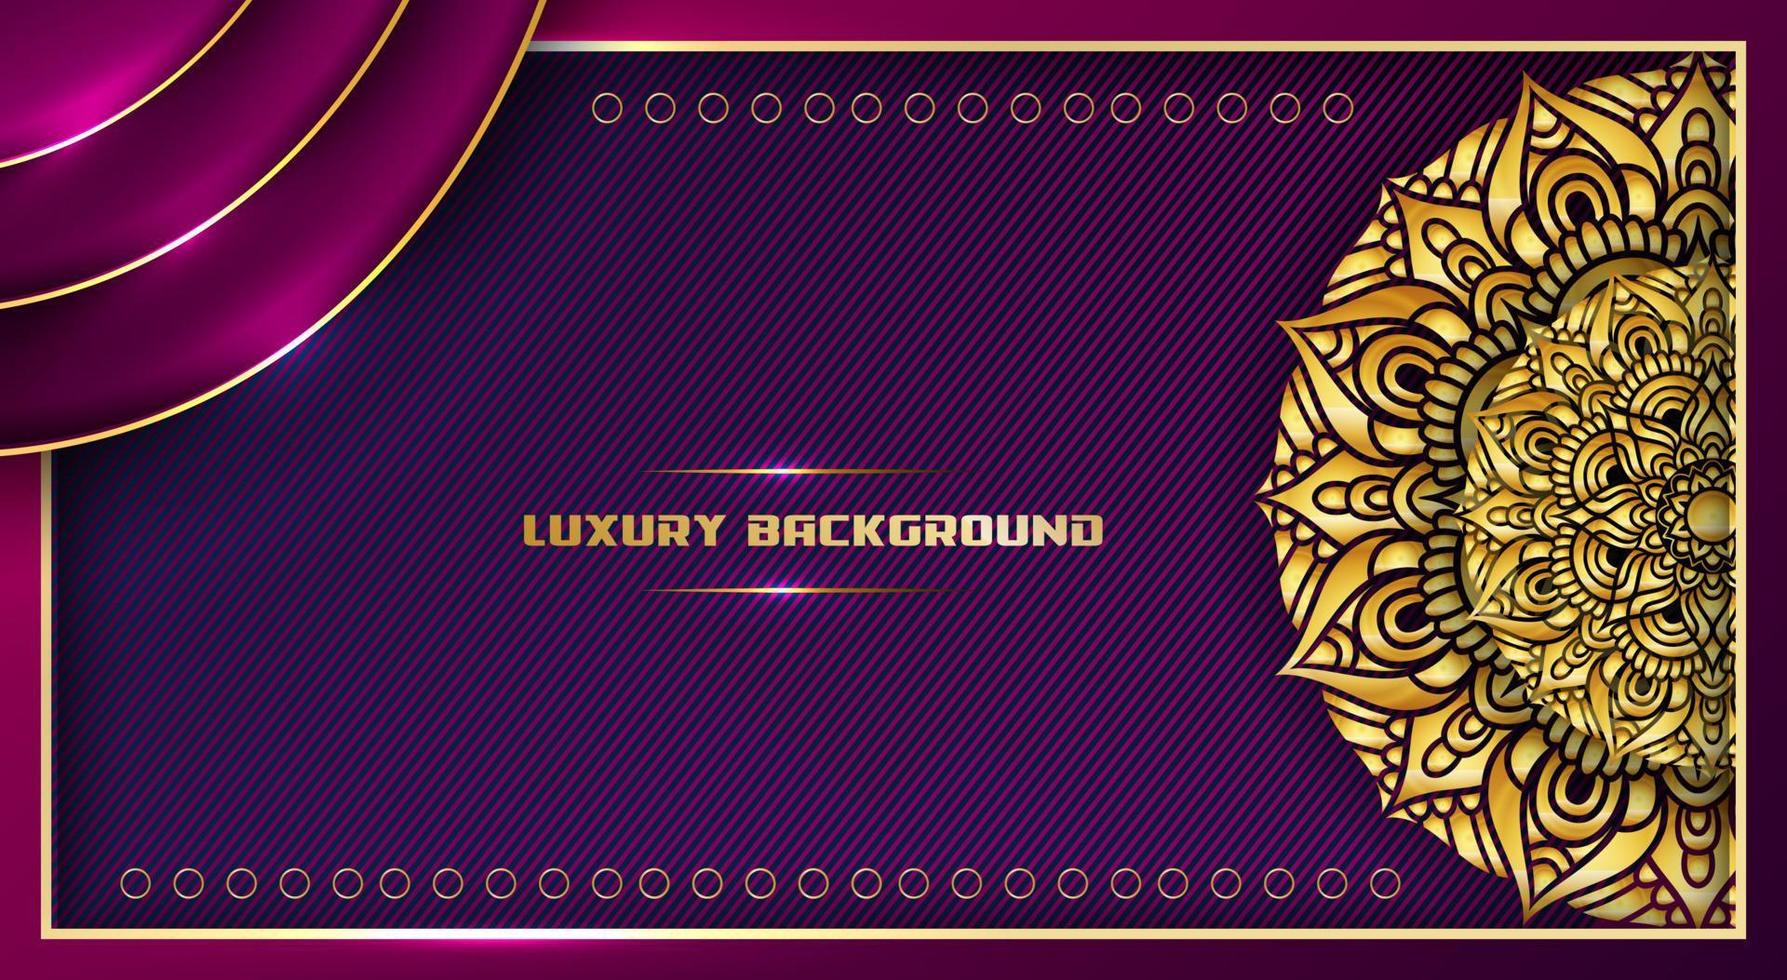 fondo de lujo con elegante marco de línea dorada y diseño de mandala, con degradado de color púrpura, vector